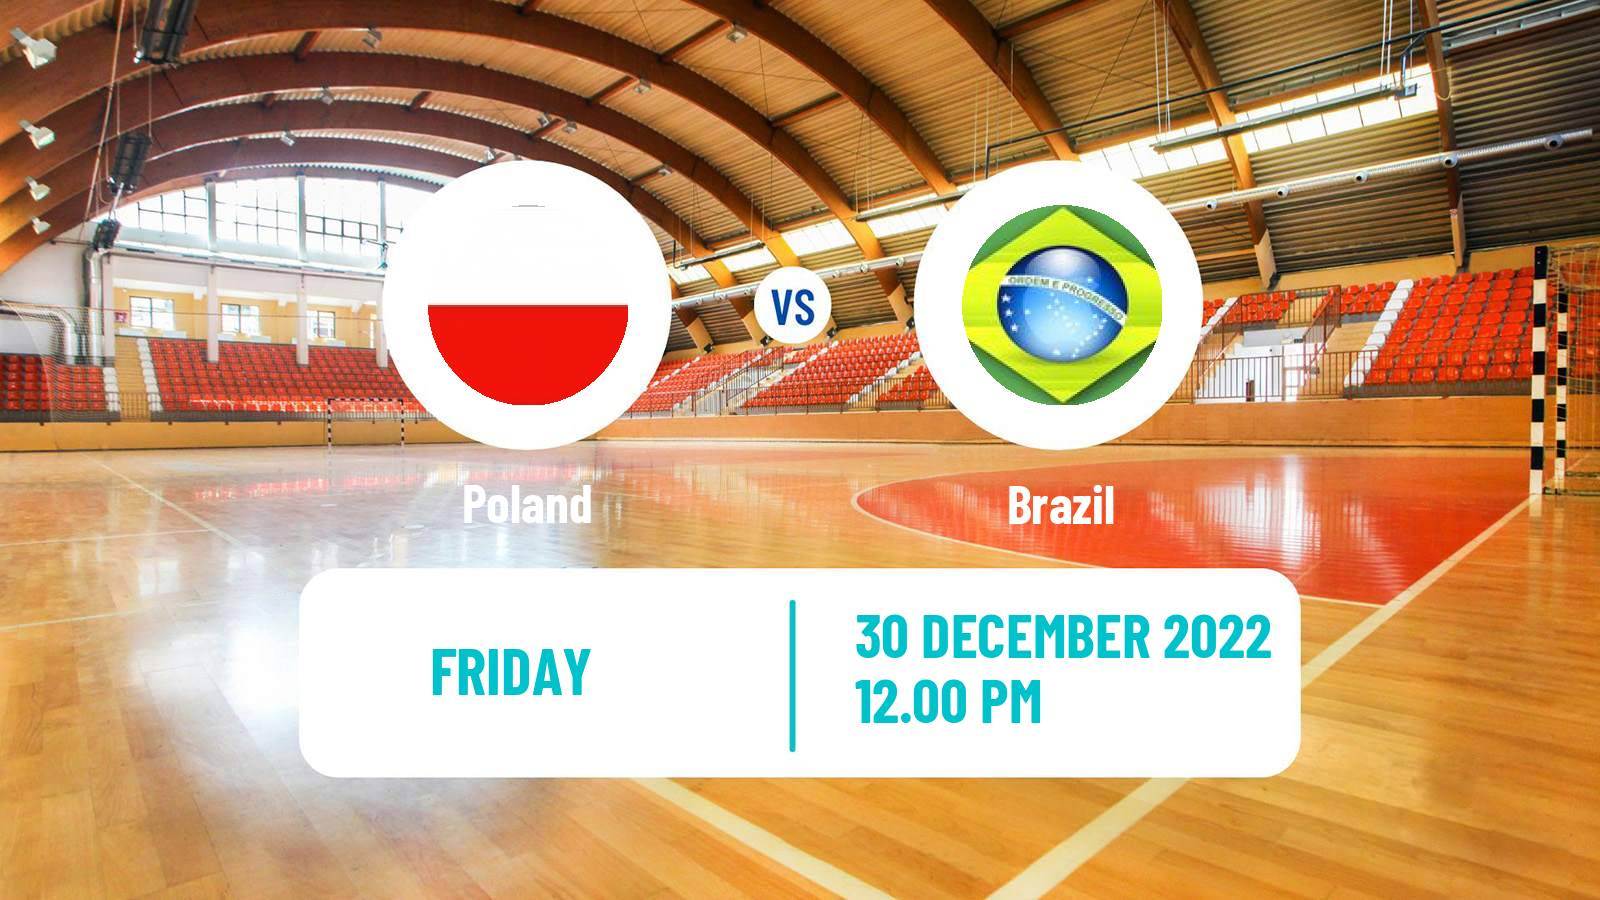 Handball Friendly International Handball Poland - Brazil